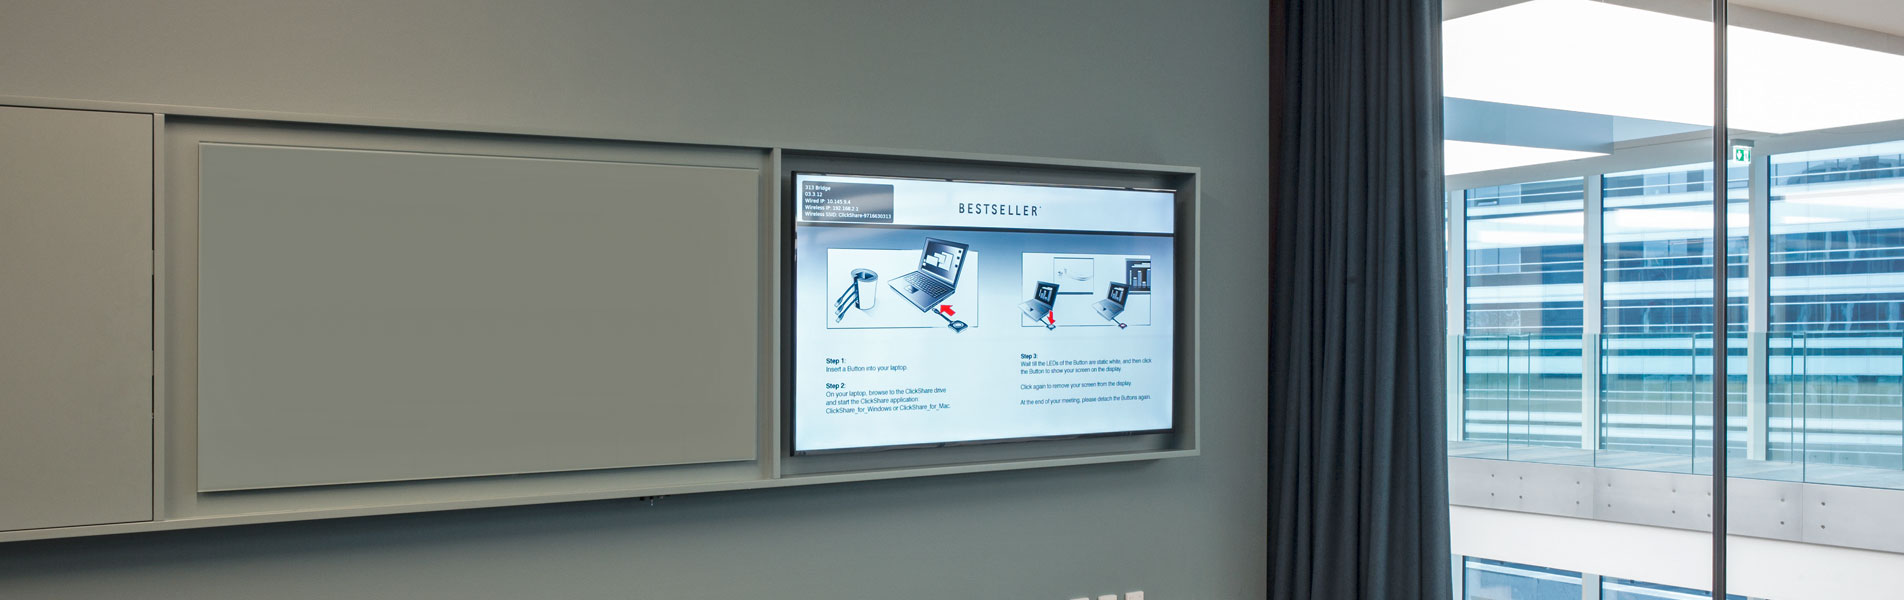 Skærme og whiteboards i mødelokalerne er integreret i én og samme løsning, hvor alle kabler er skjulte så intet hænger løst, hvilket giver et yderst enkelt helhedsindtryk.